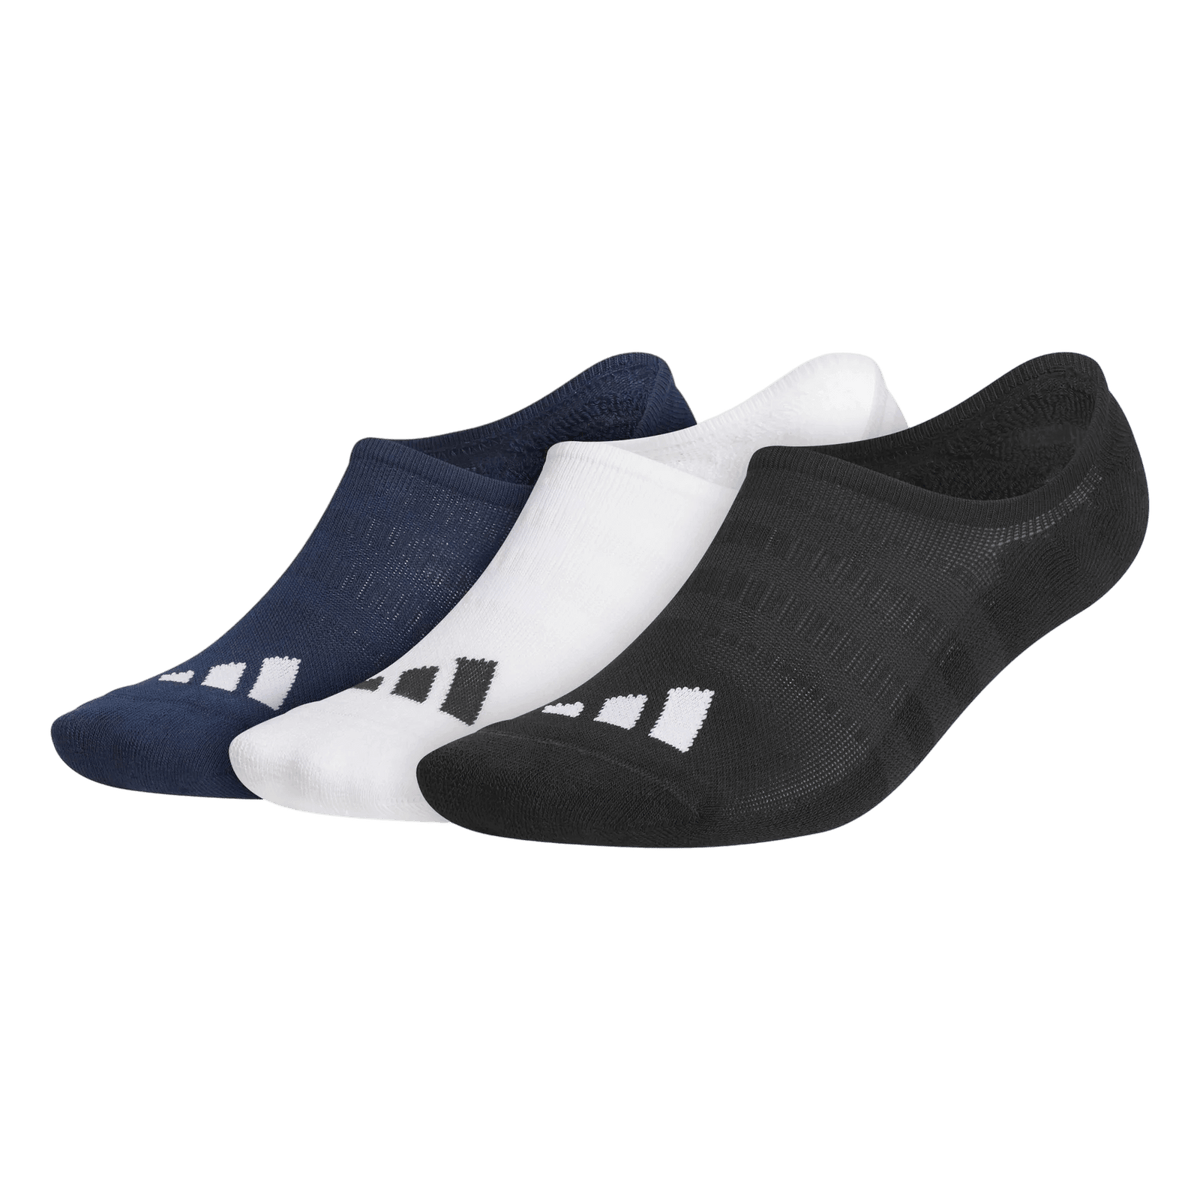 Adidas No Show Socks Mens - Pack of 3 Pairs